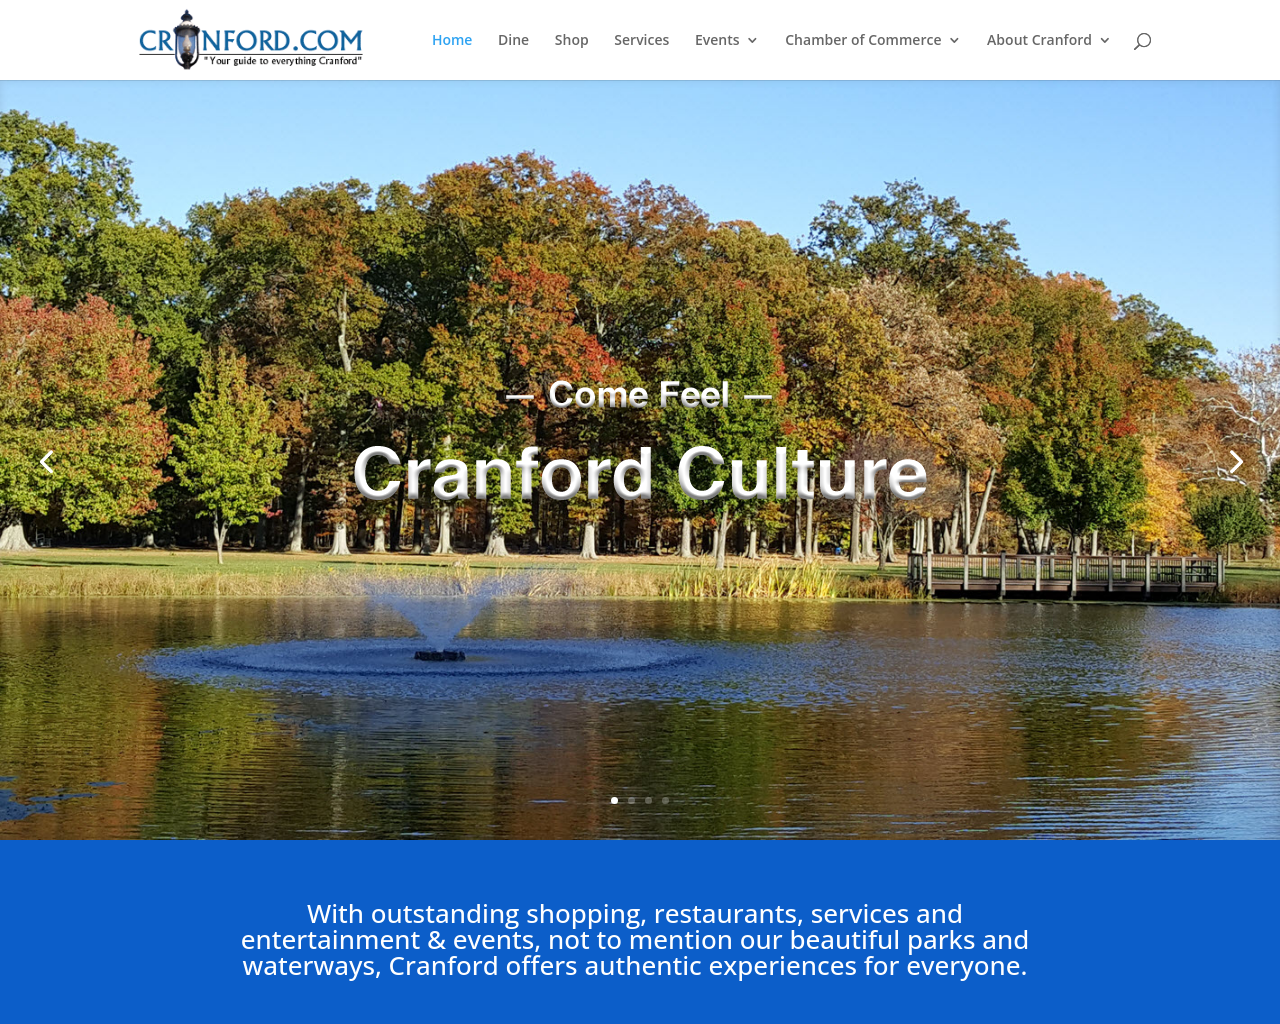 cranford.com